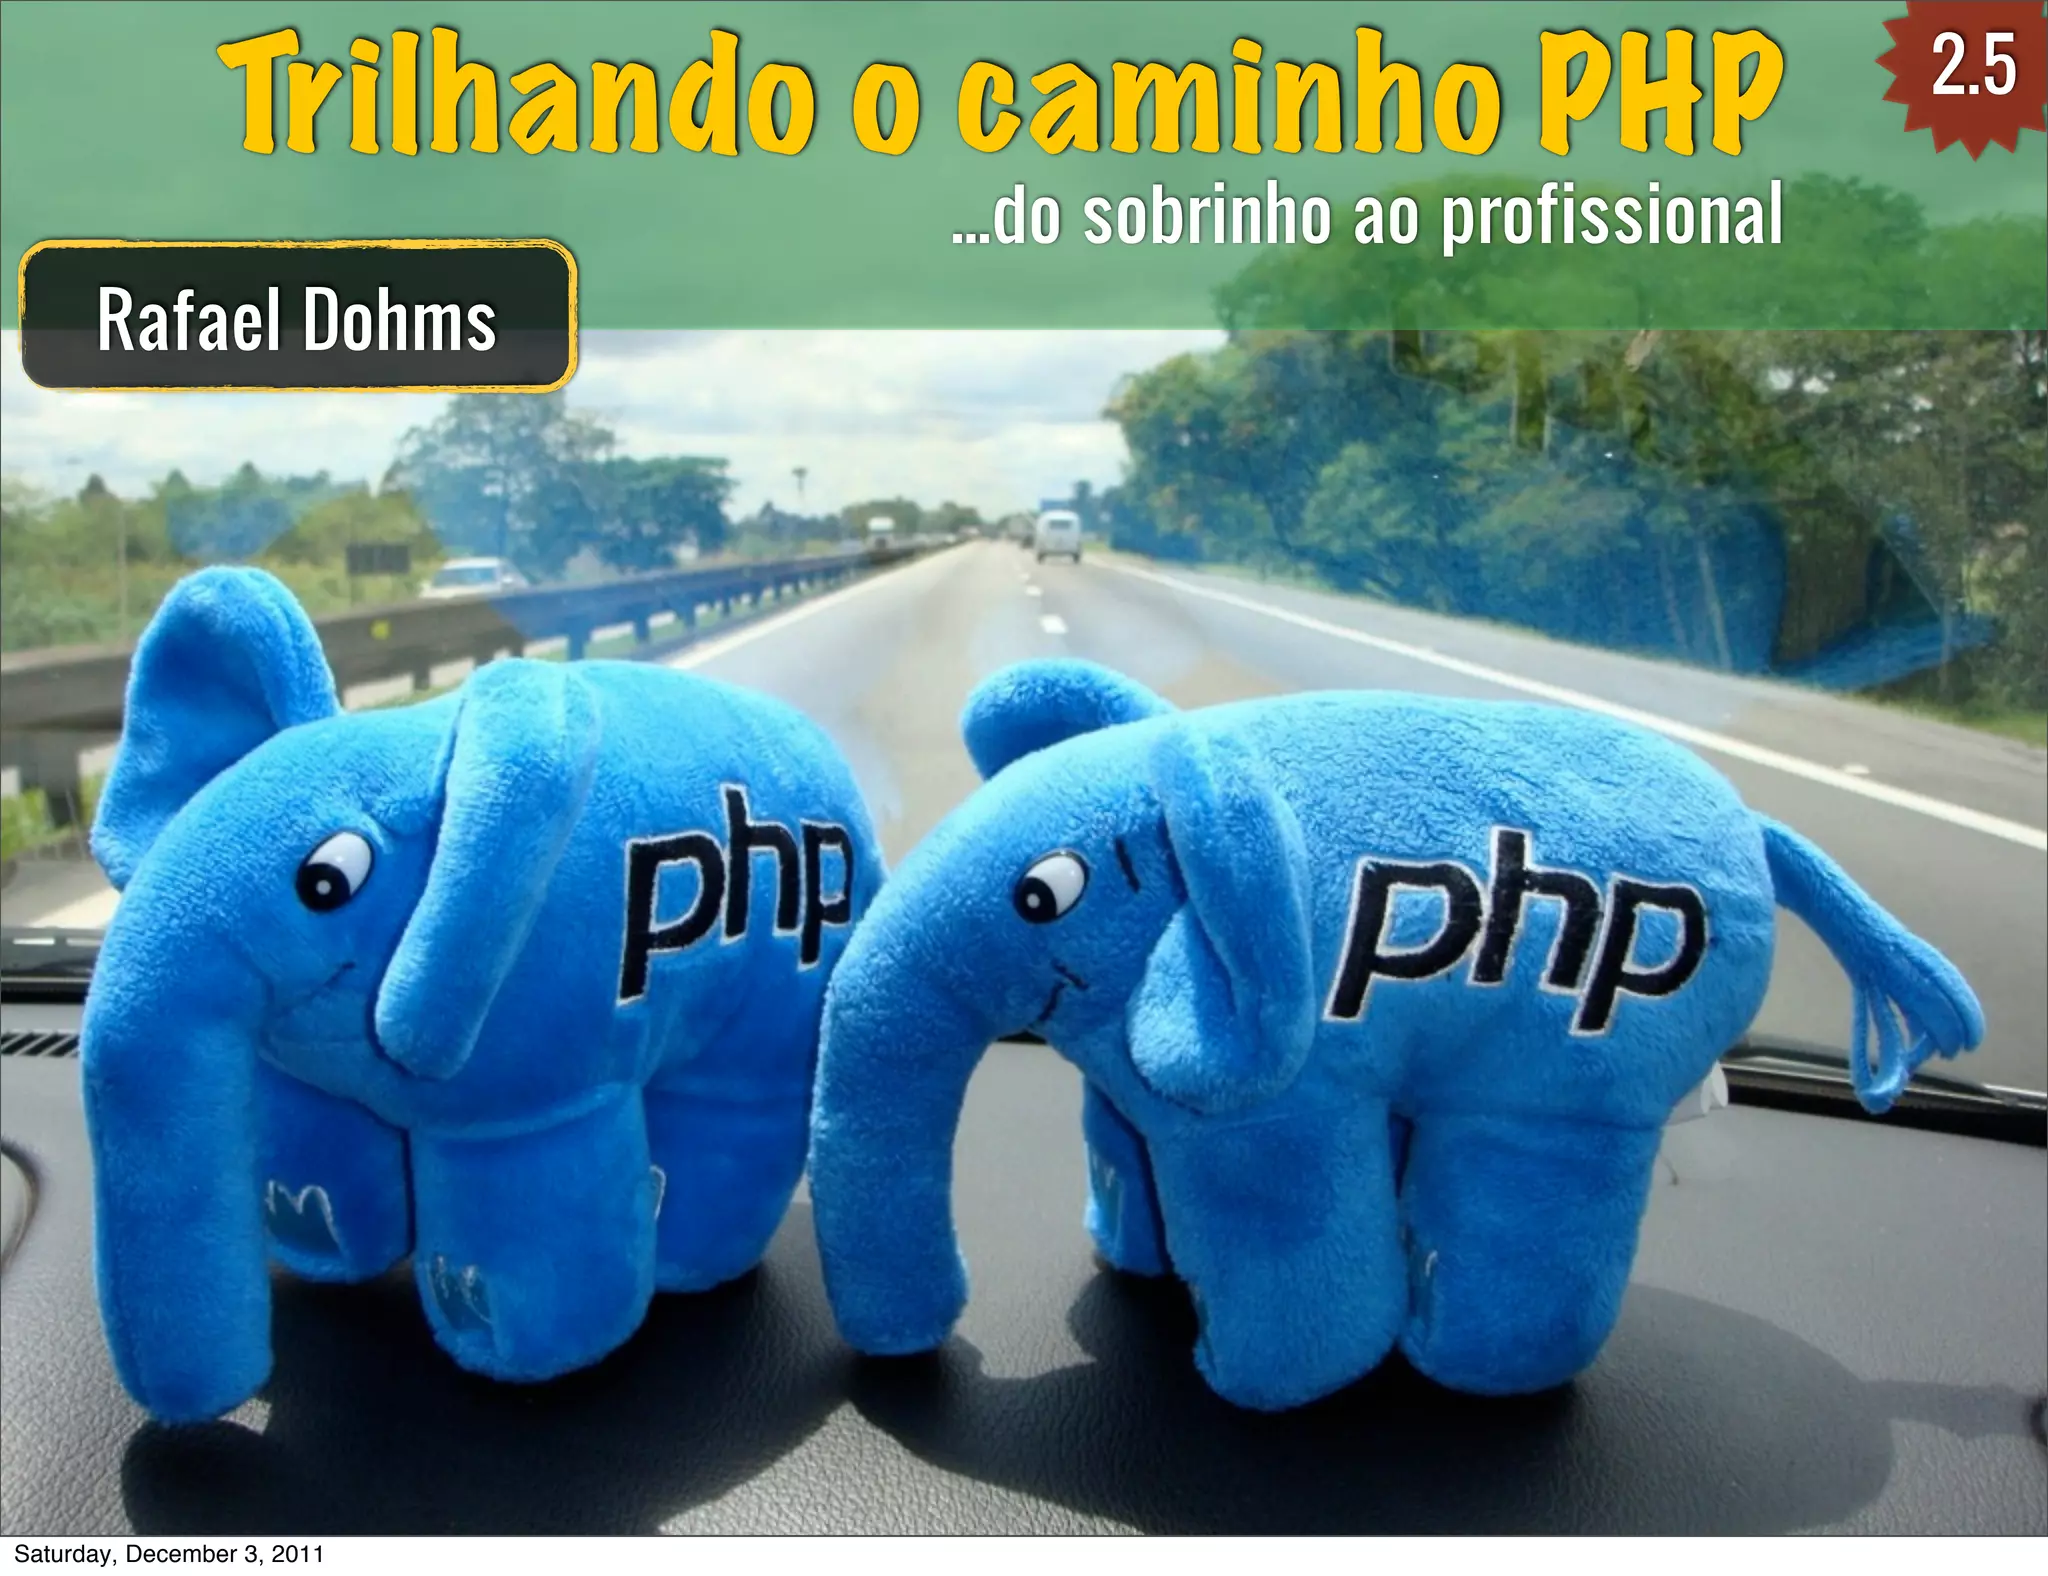 Trilhando o caminho PHP 2.5